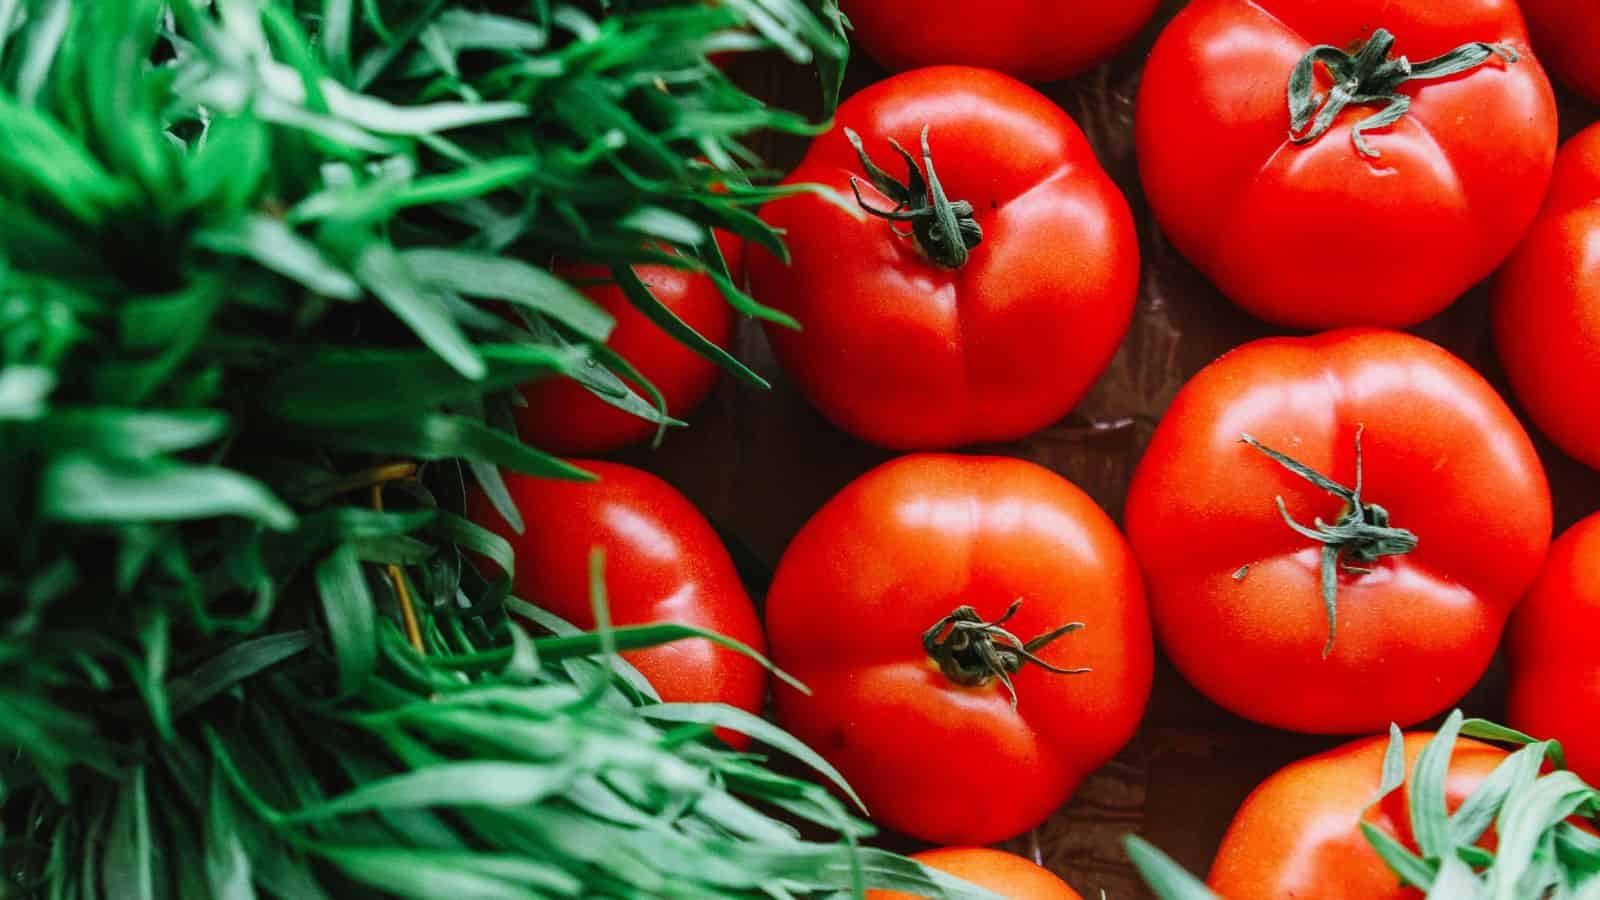 Overhead image of tomatoes.